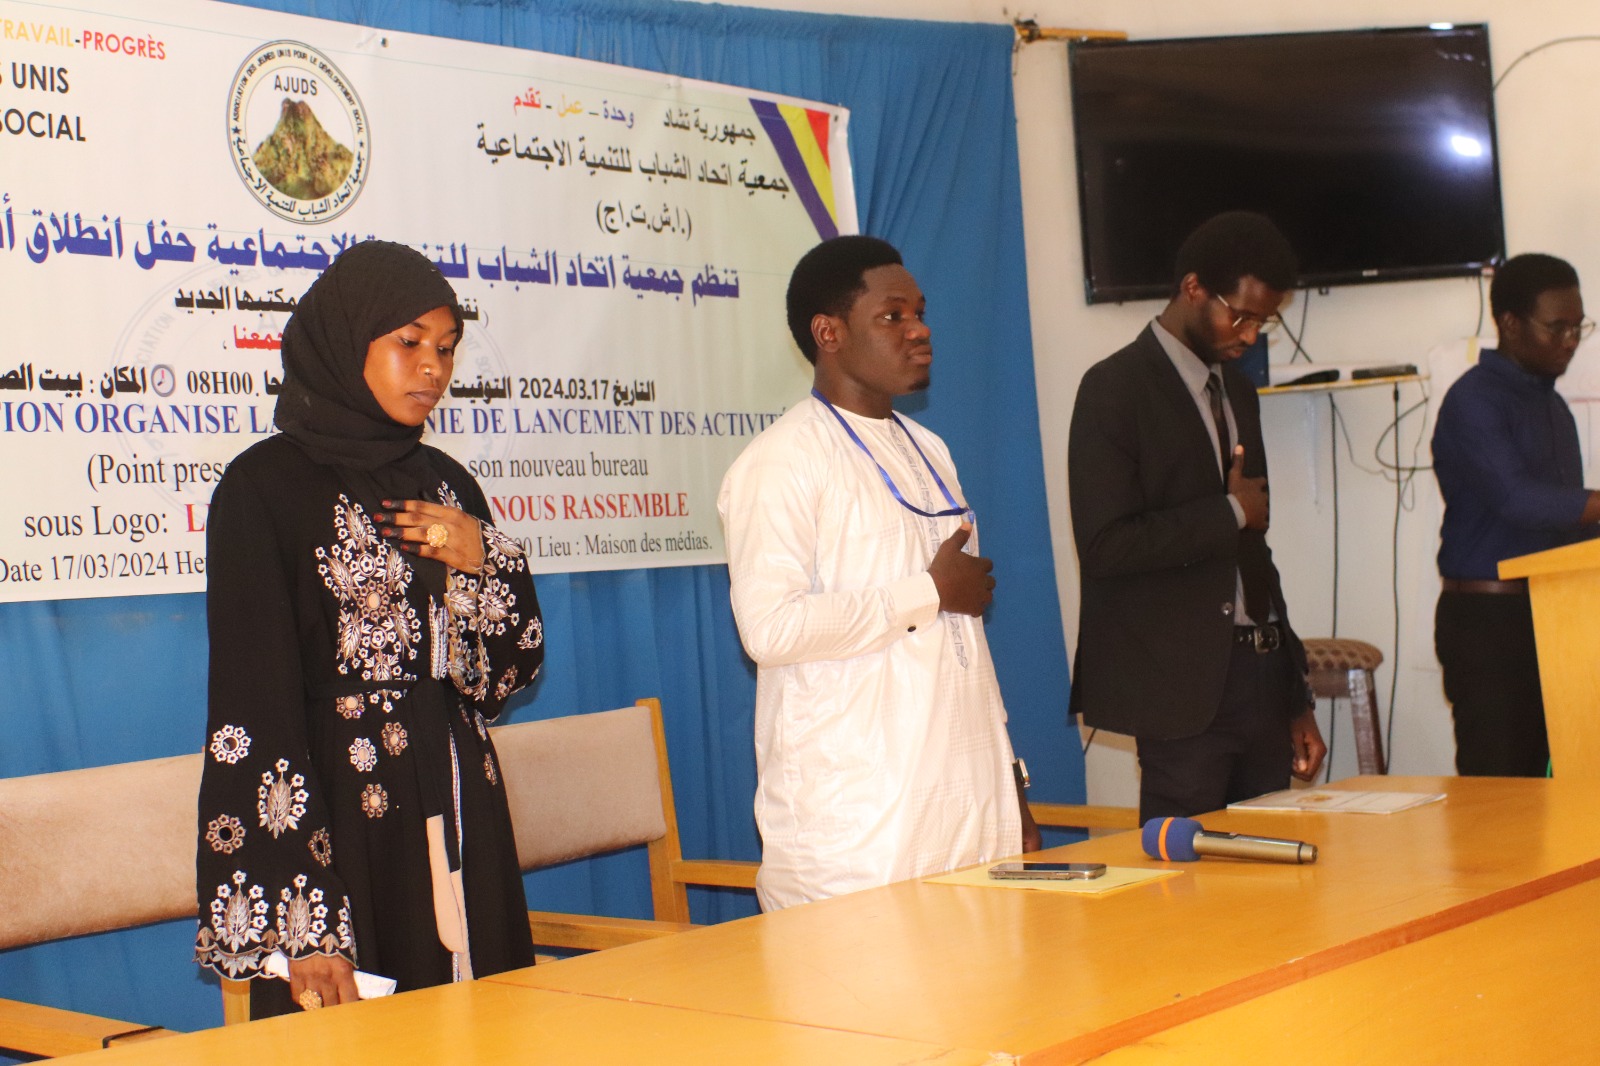 Tchad : l'AJUDS lance ses actions pour le développement social des jeunes